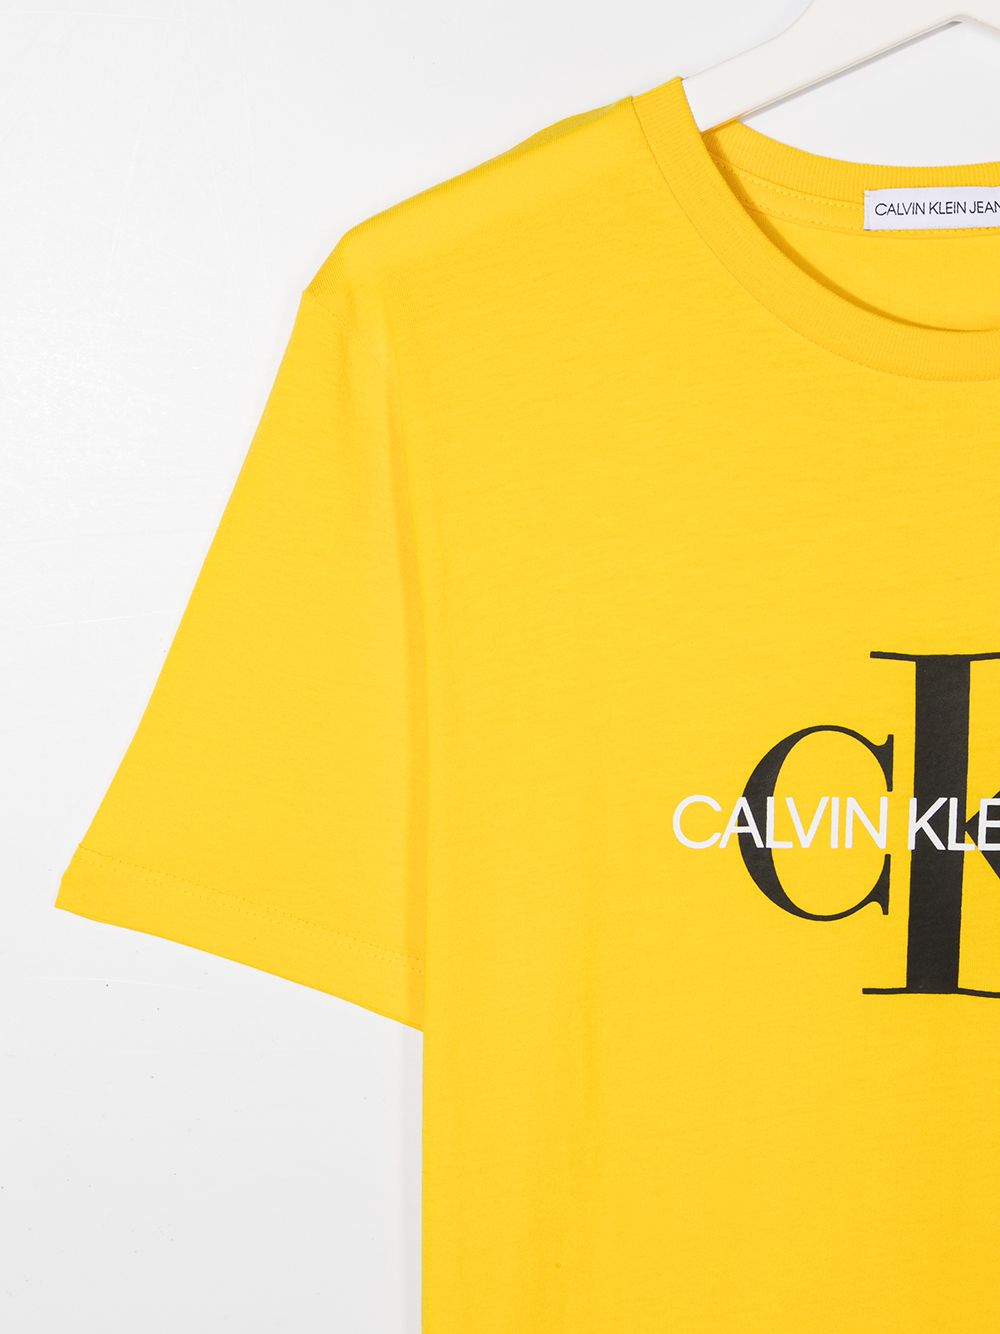 фото Calvin klein kids футболка с логотипом